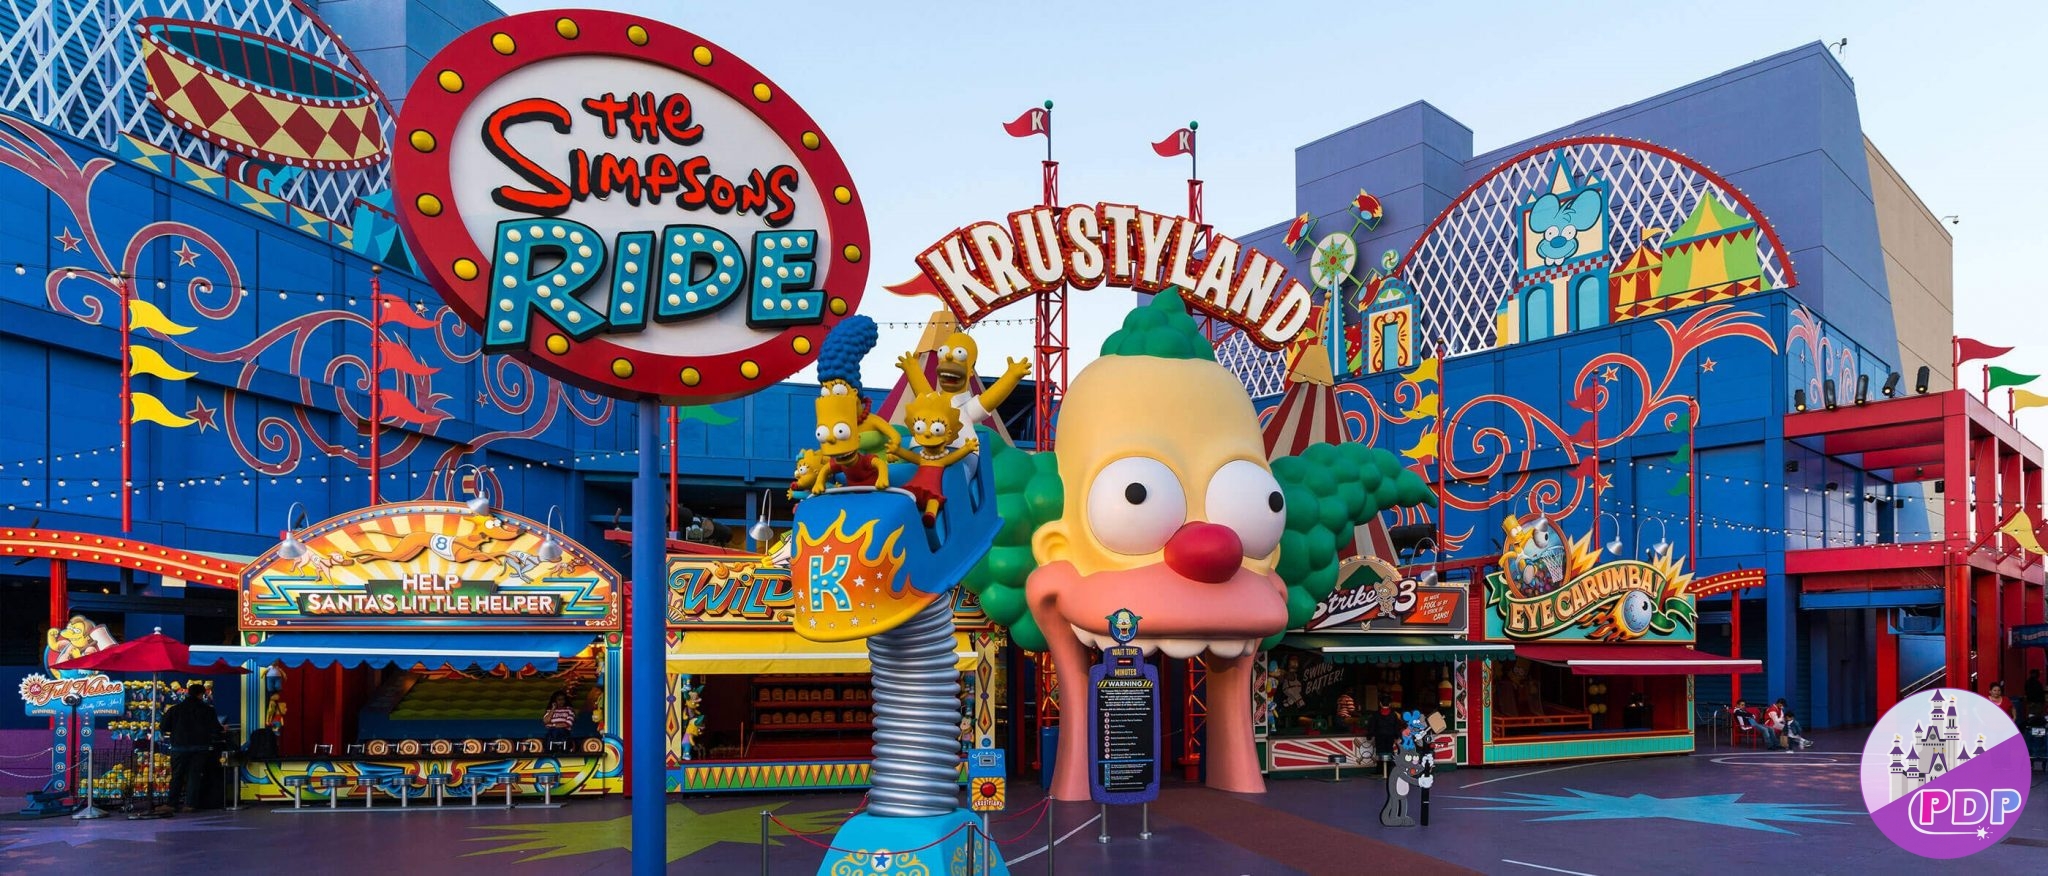 Springfield em Orlando - Àrea dos Simpsons na Universal Studios